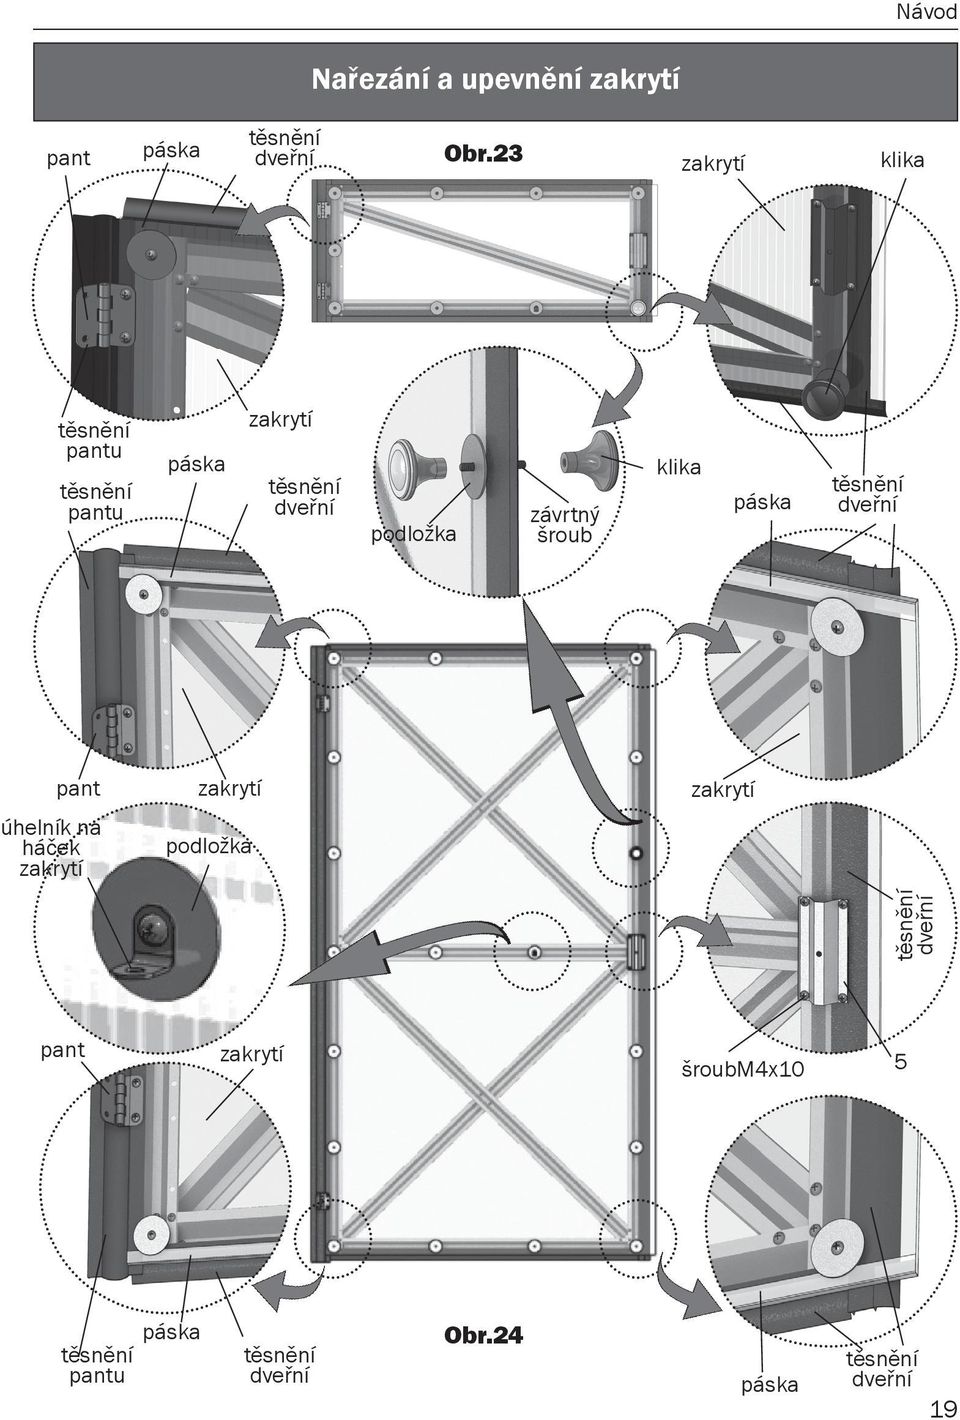 dveřní podložka těsnění dveřní úhelník na háček těsnění dveřní páska